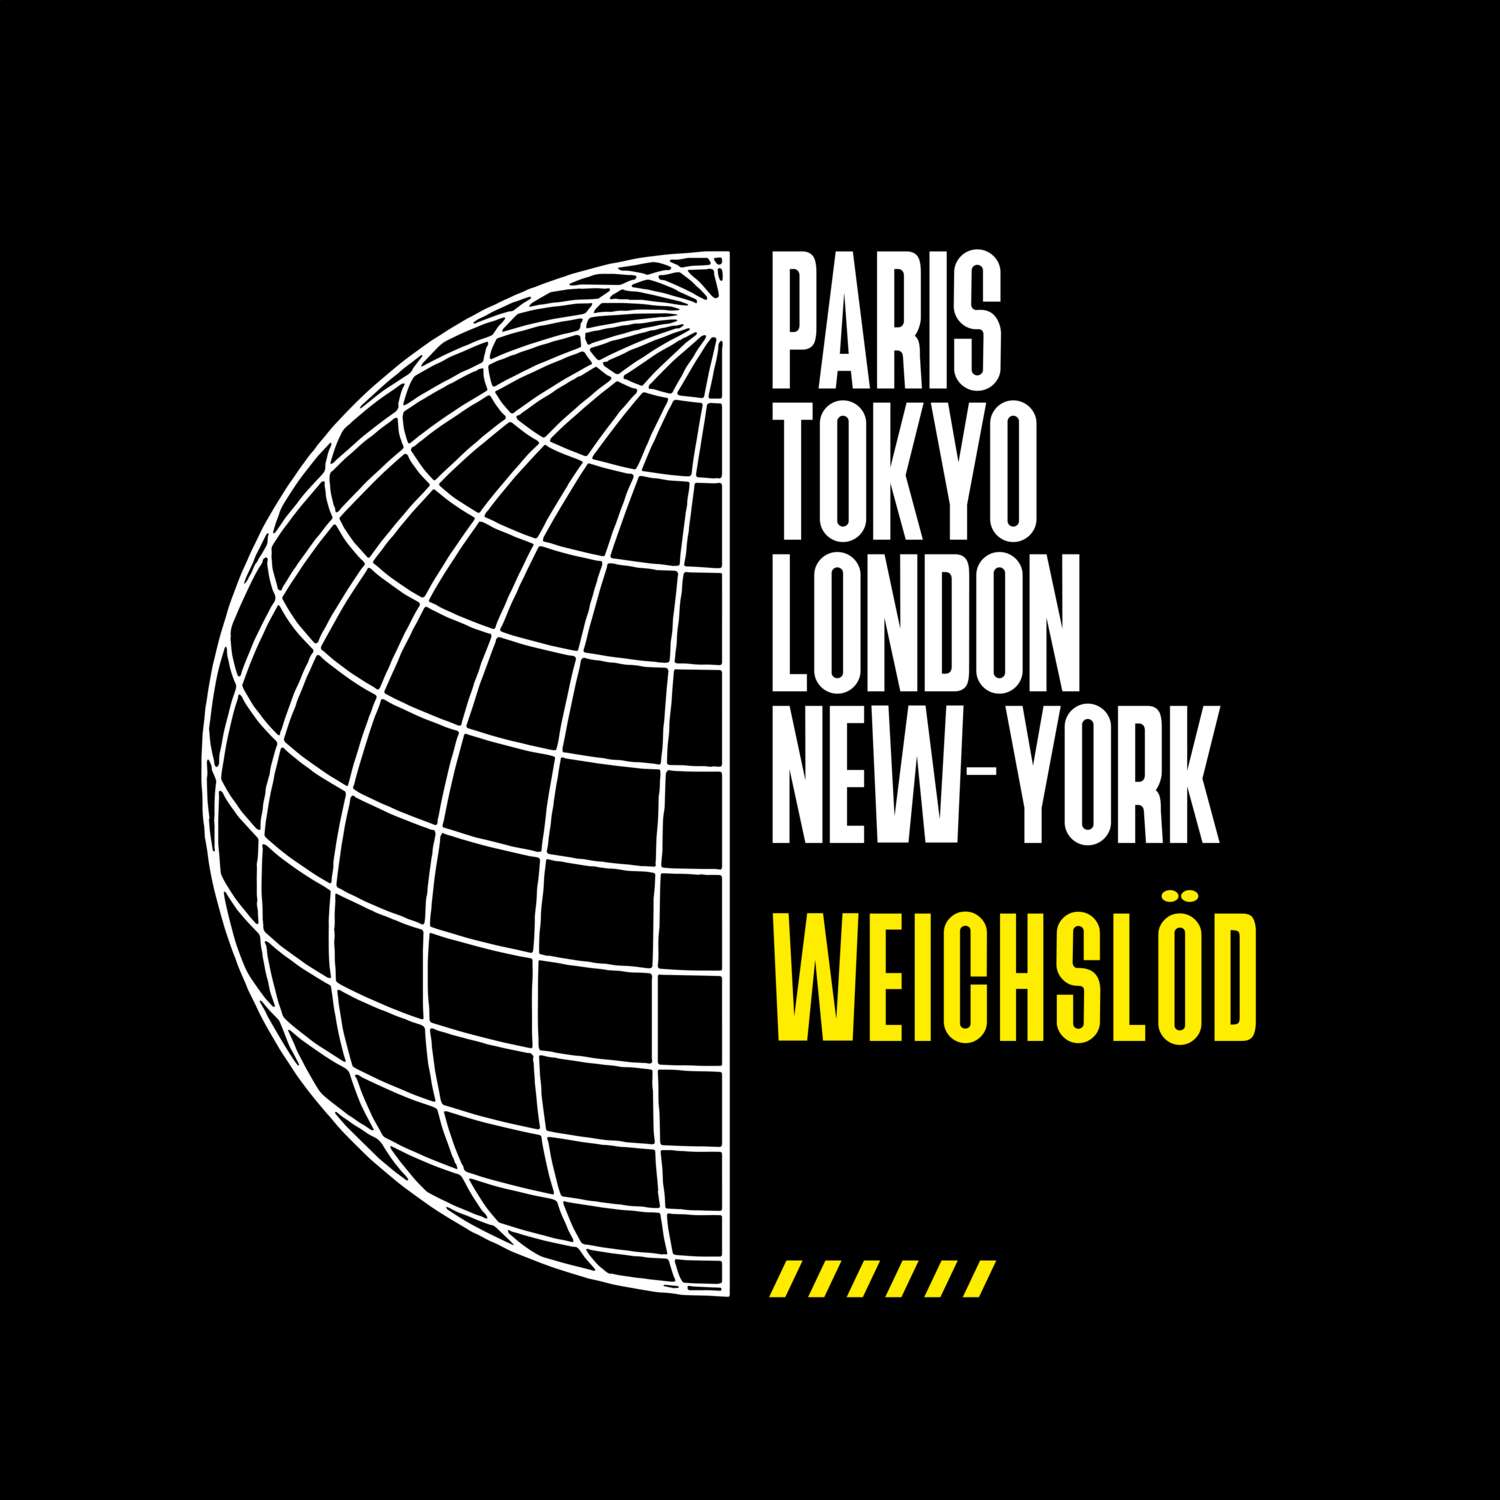 Weichslöd T-Shirt »Paris Tokyo London«